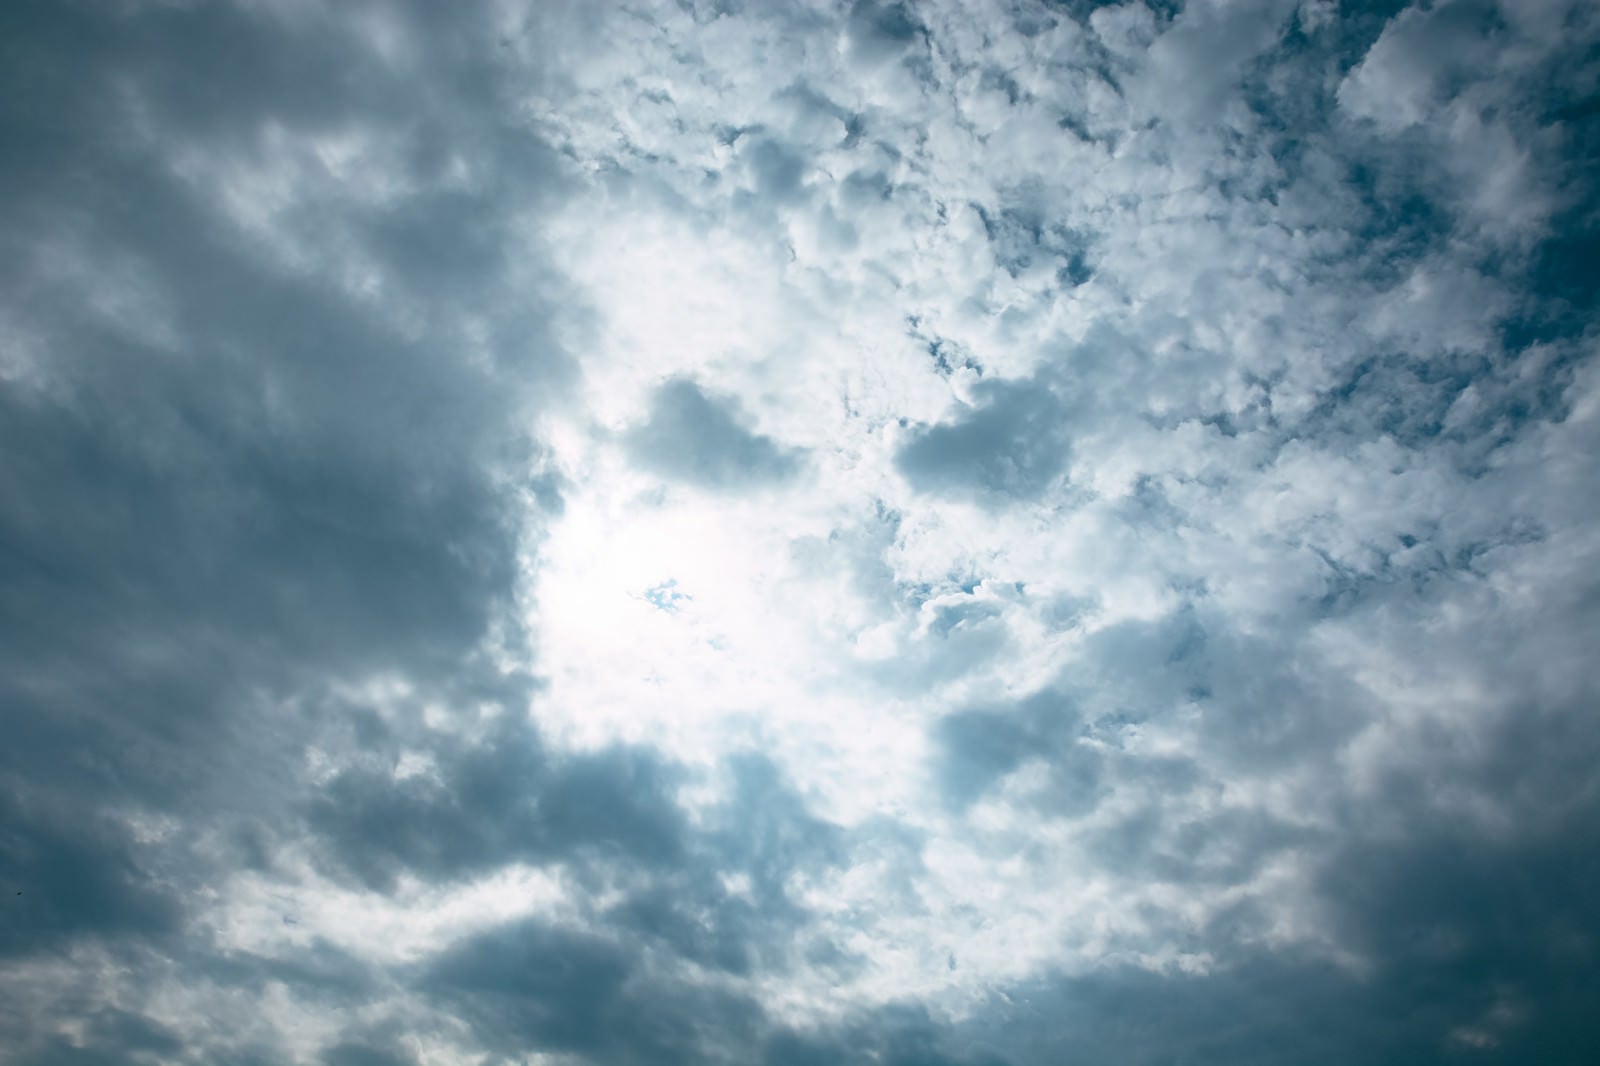 「灰色の雲の合間から光が漏れる空」の写真